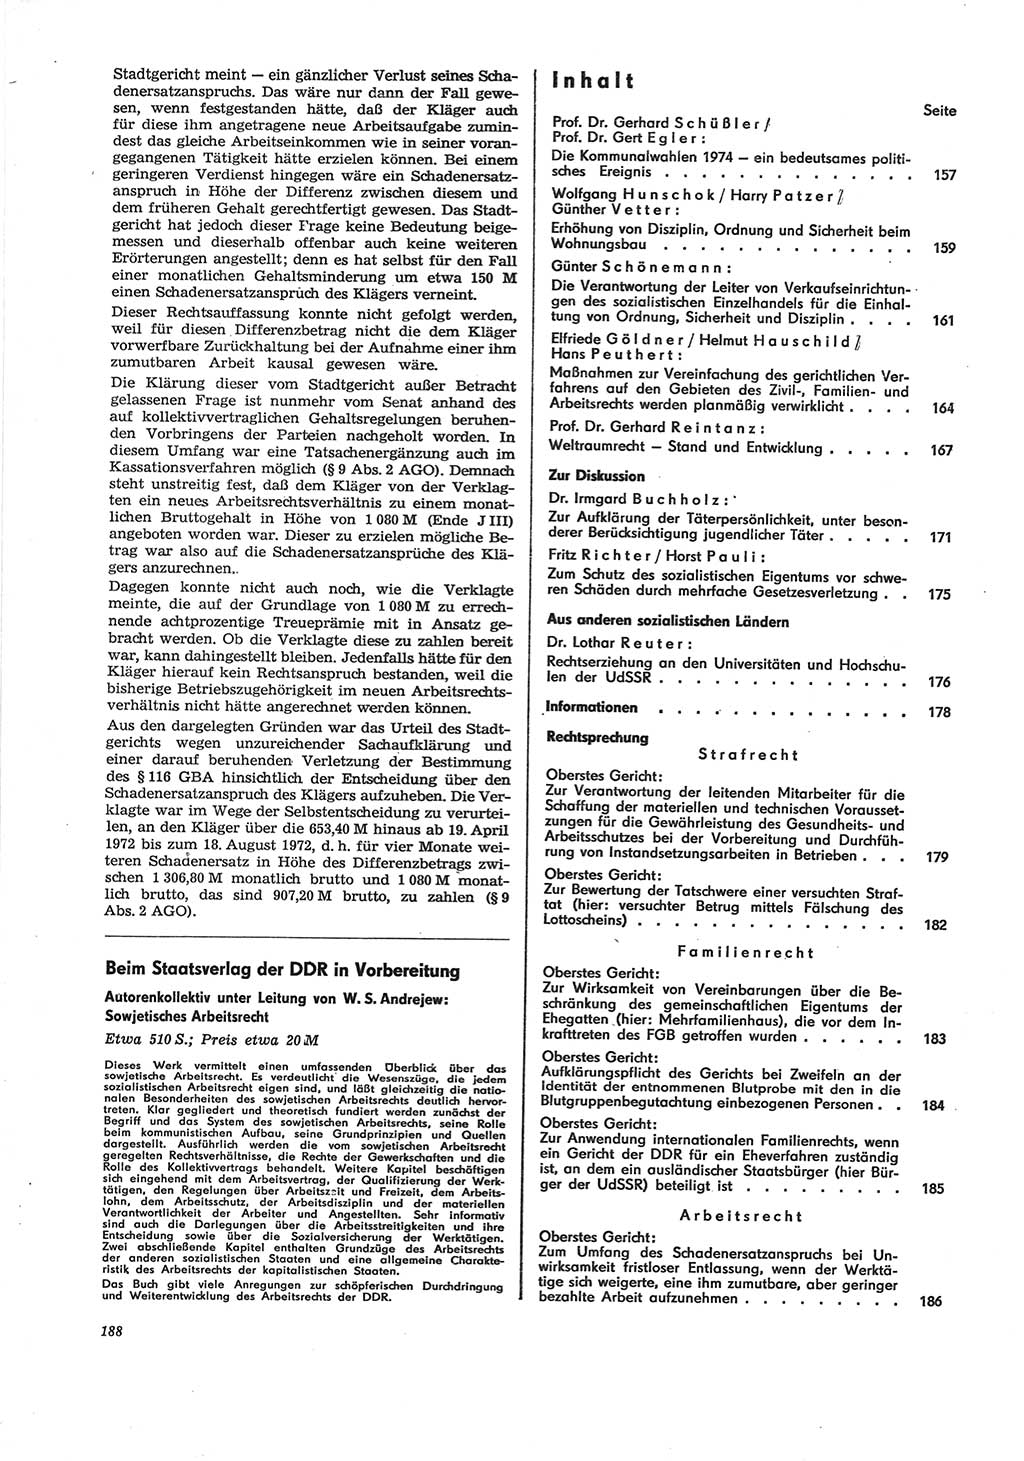 Neue Justiz (NJ), Zeitschrift für Recht und Rechtswissenschaft [Deutsche Demokratische Republik (DDR)], 28. Jahrgang 1974, Seite 188 (NJ DDR 1974, S. 188)